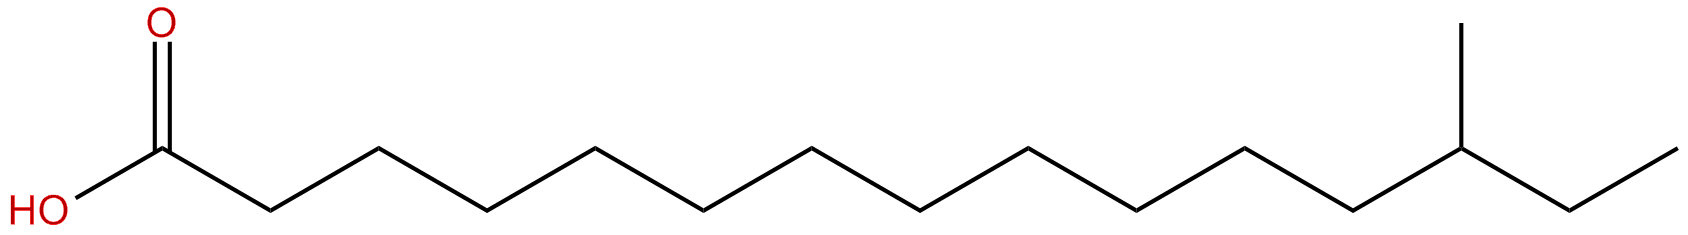 Image of 13-methylpentadecanoic acid